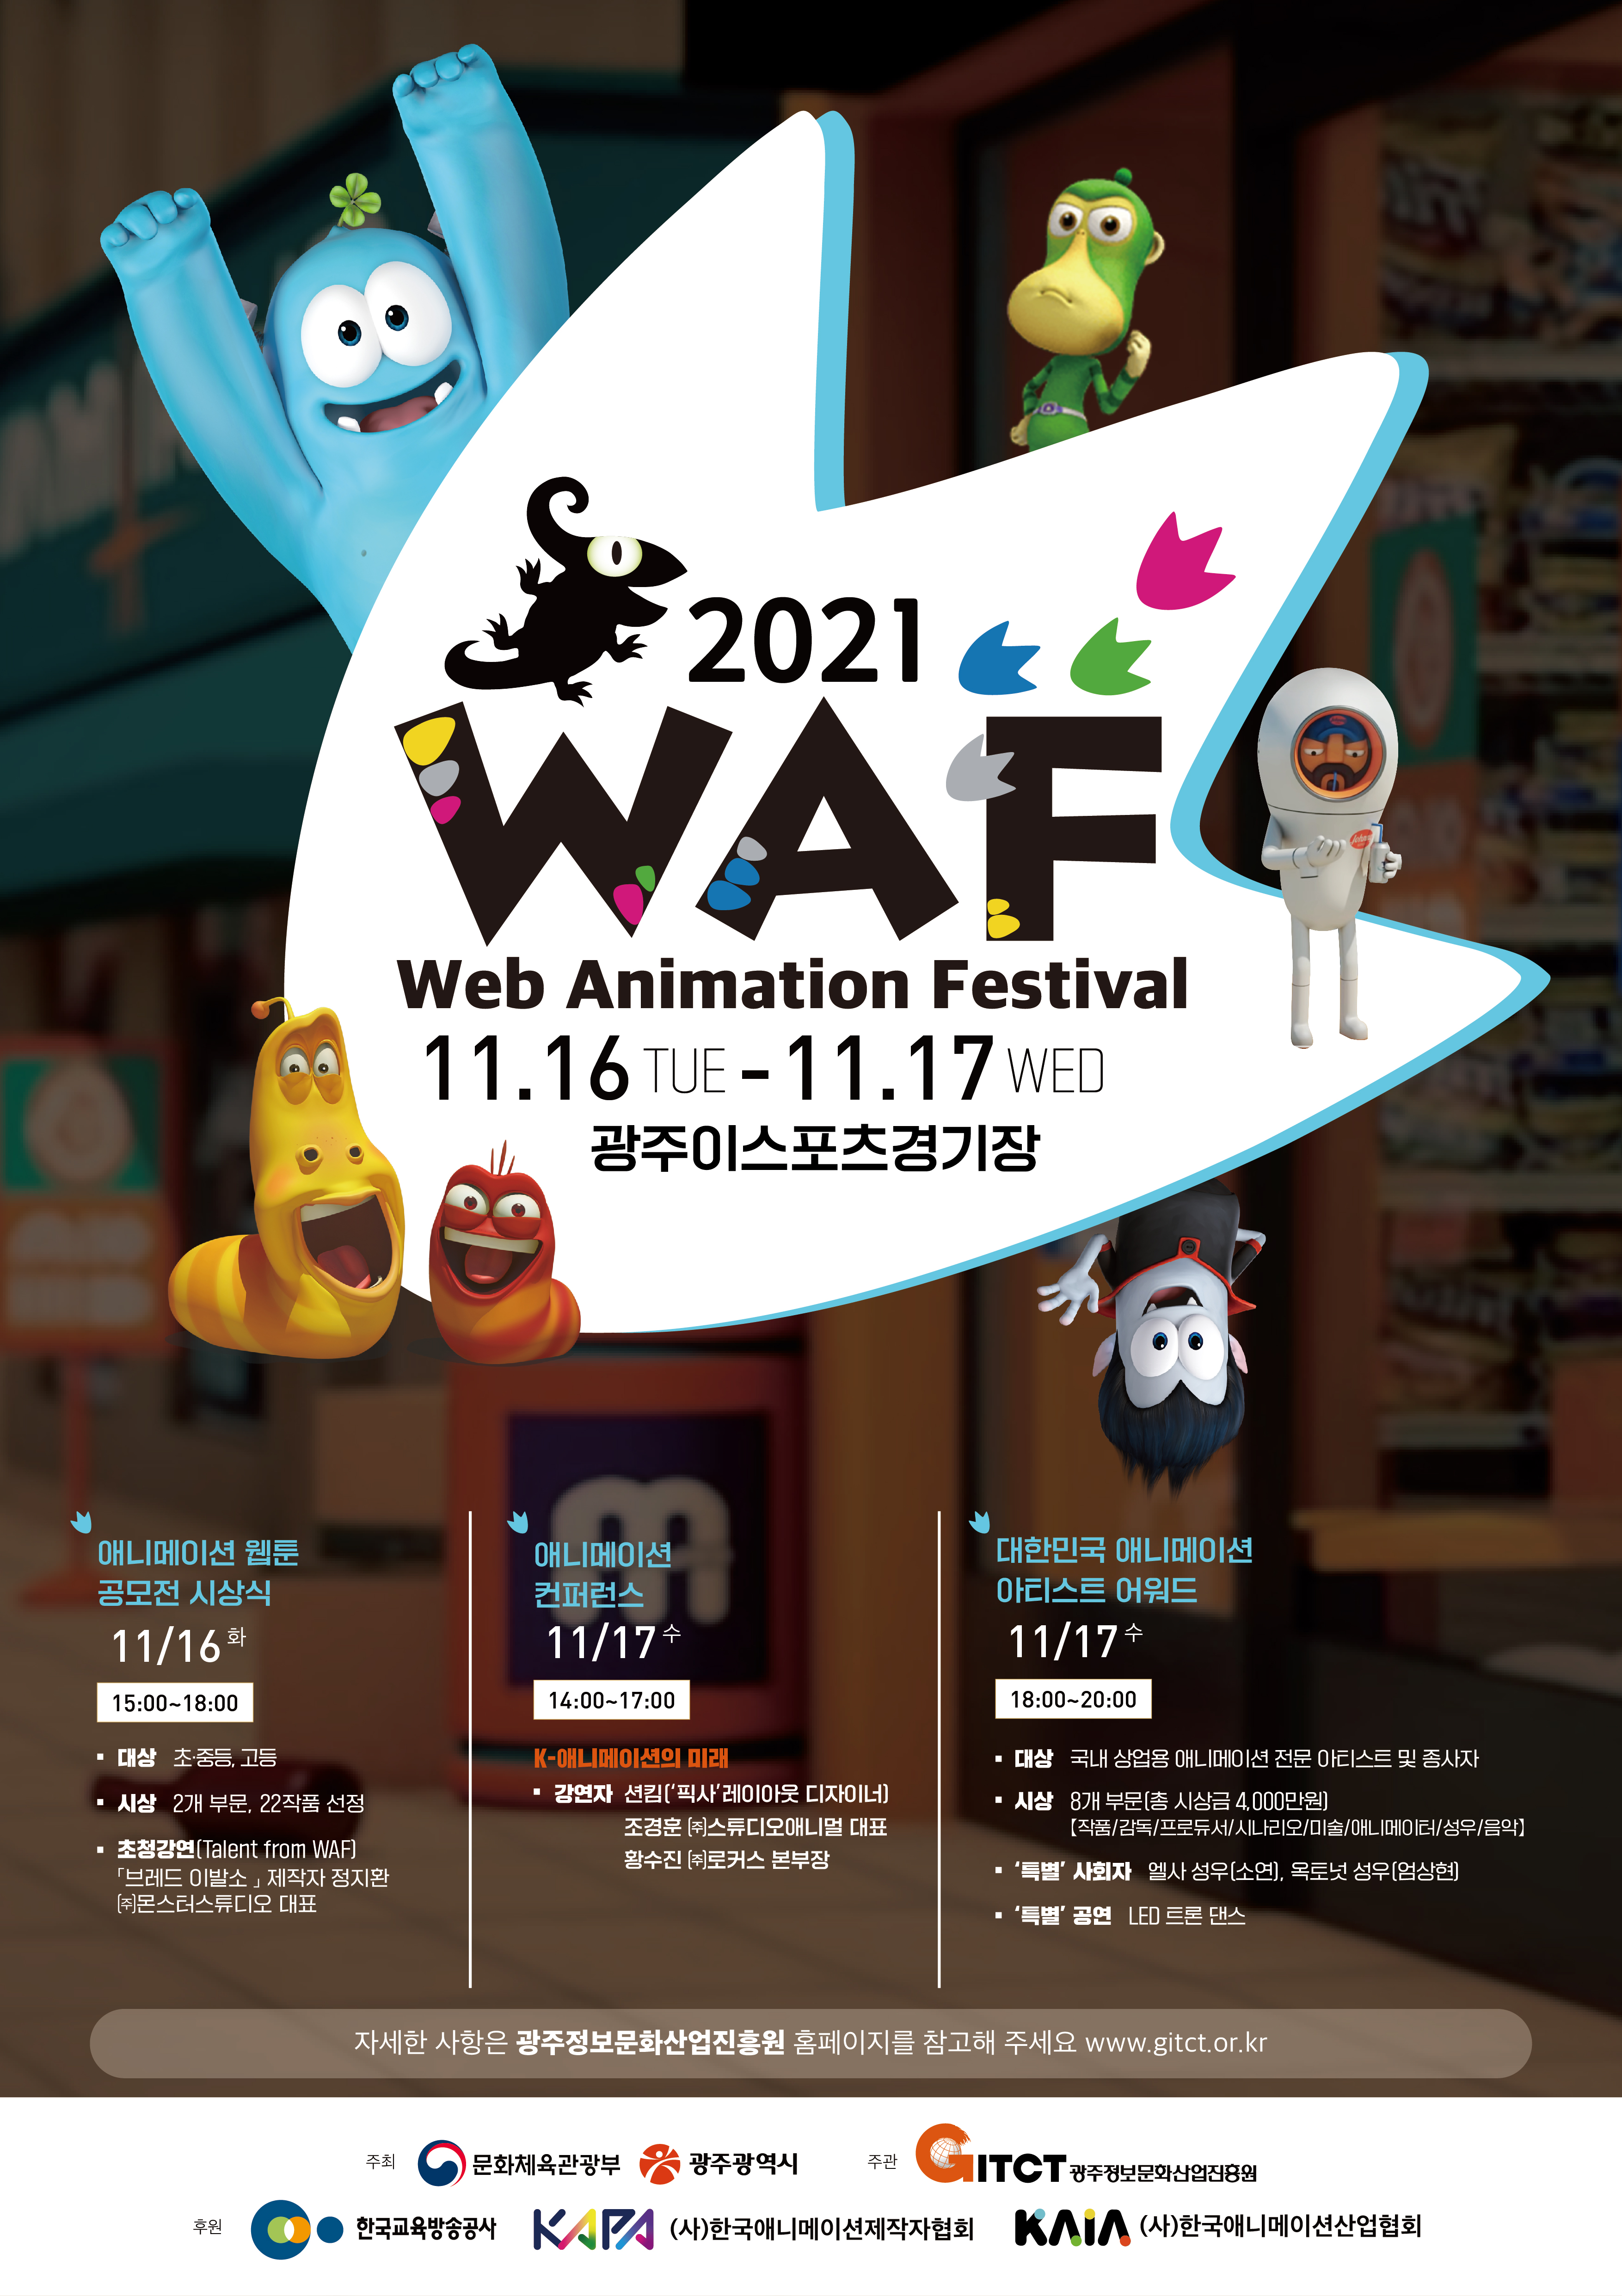 2021 WAF(Web Animation Festival)